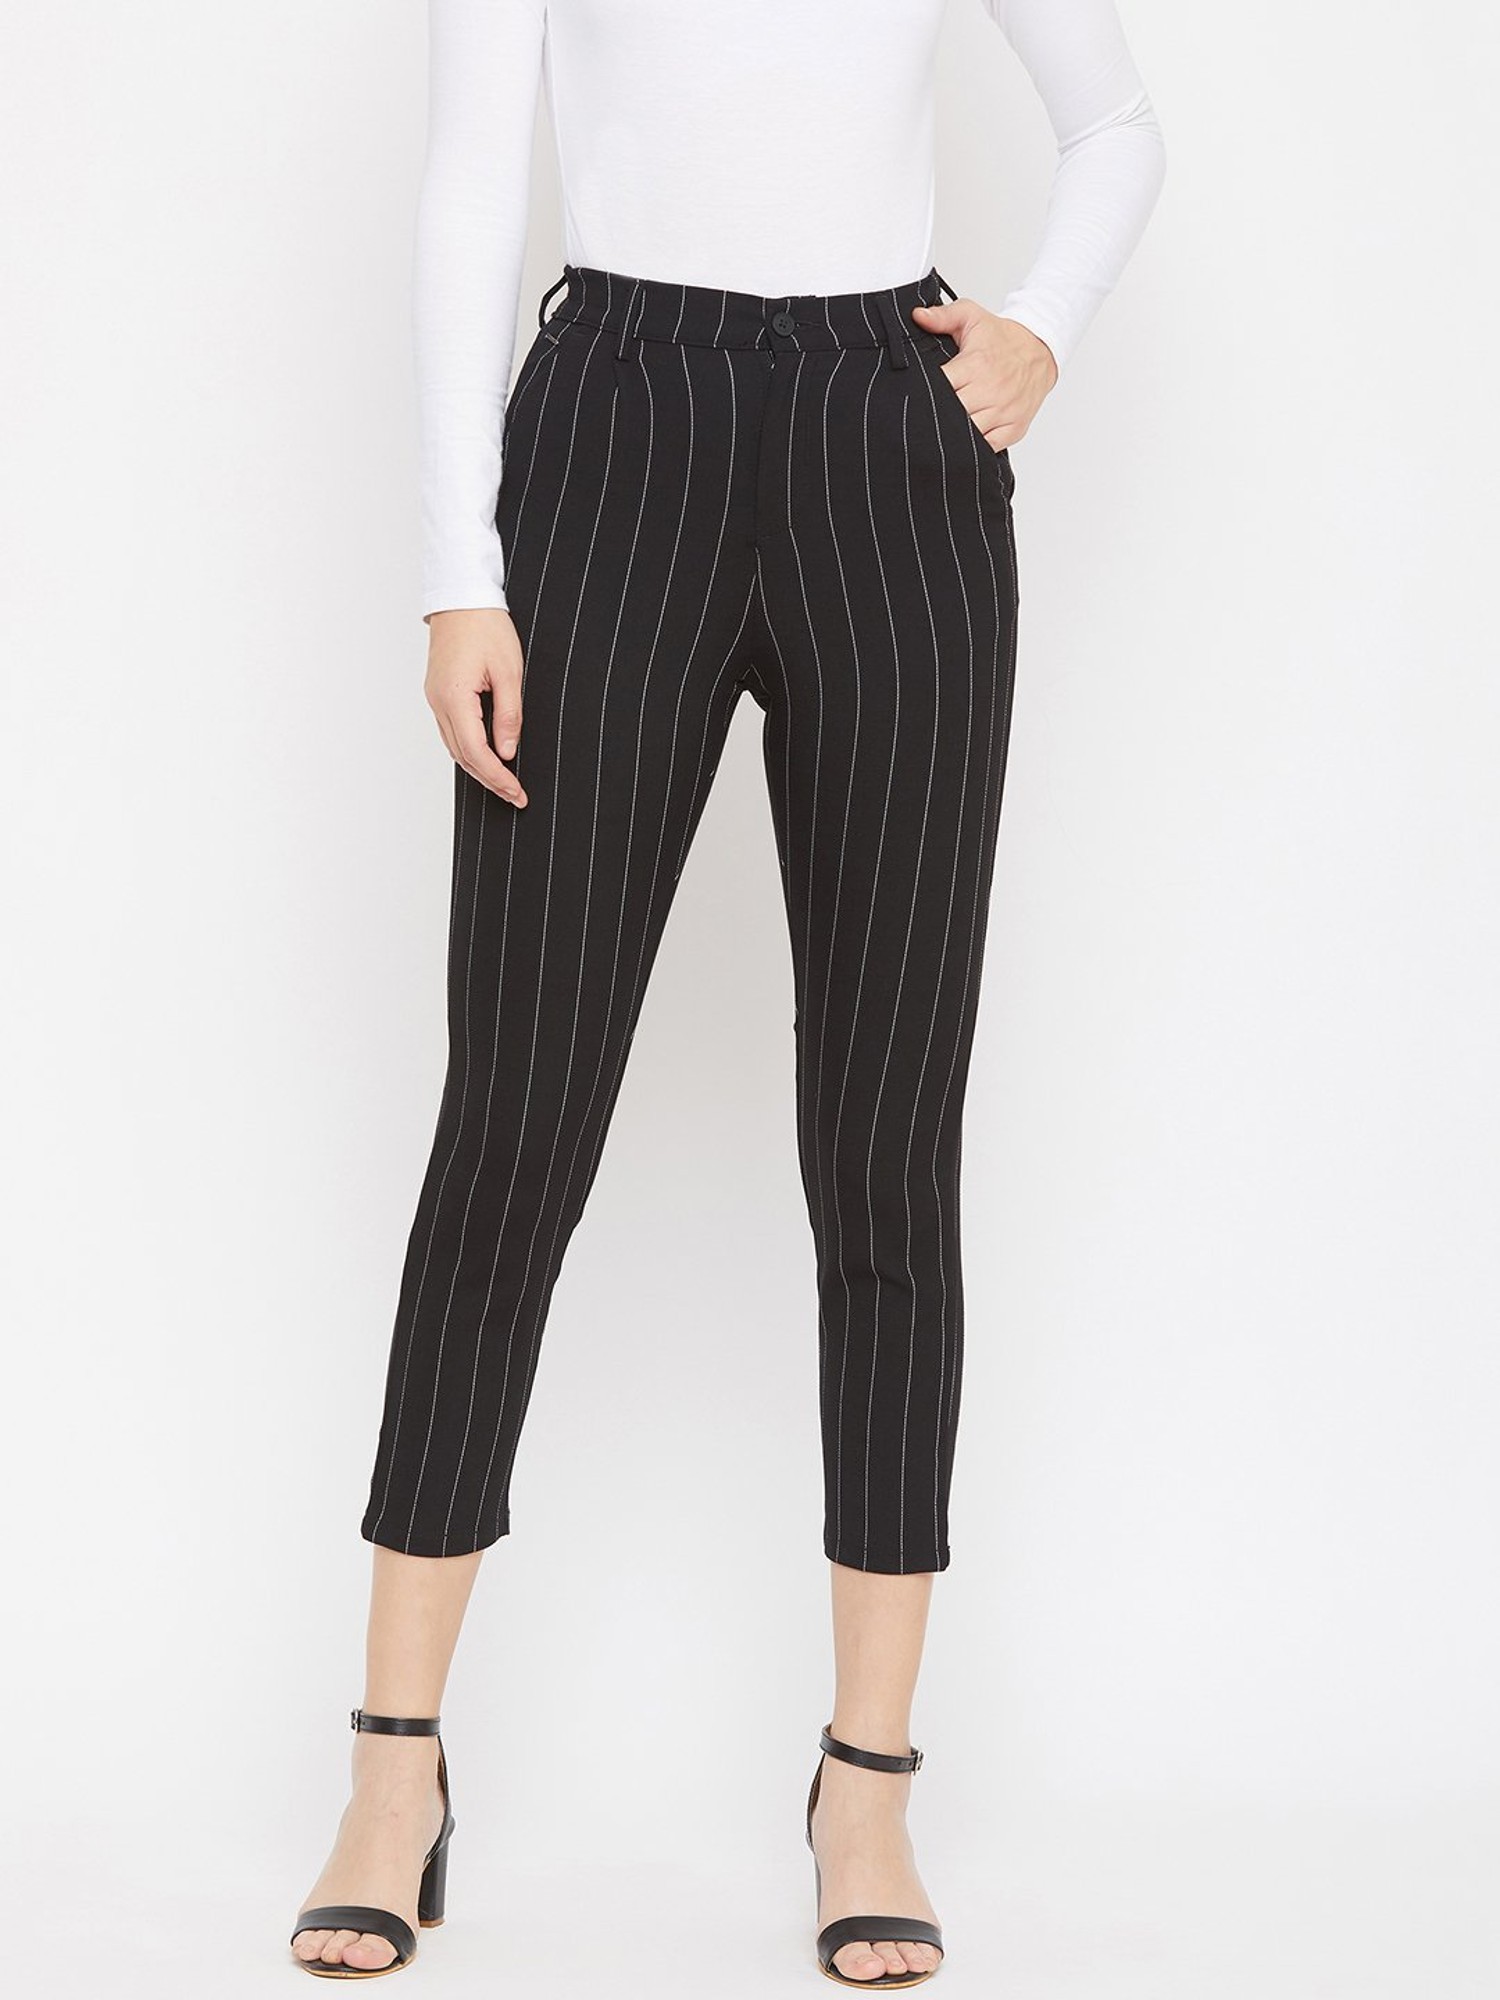 Buy Women White Regular Fit Stripe Casual Trousers Online  751528  Allen  Solly